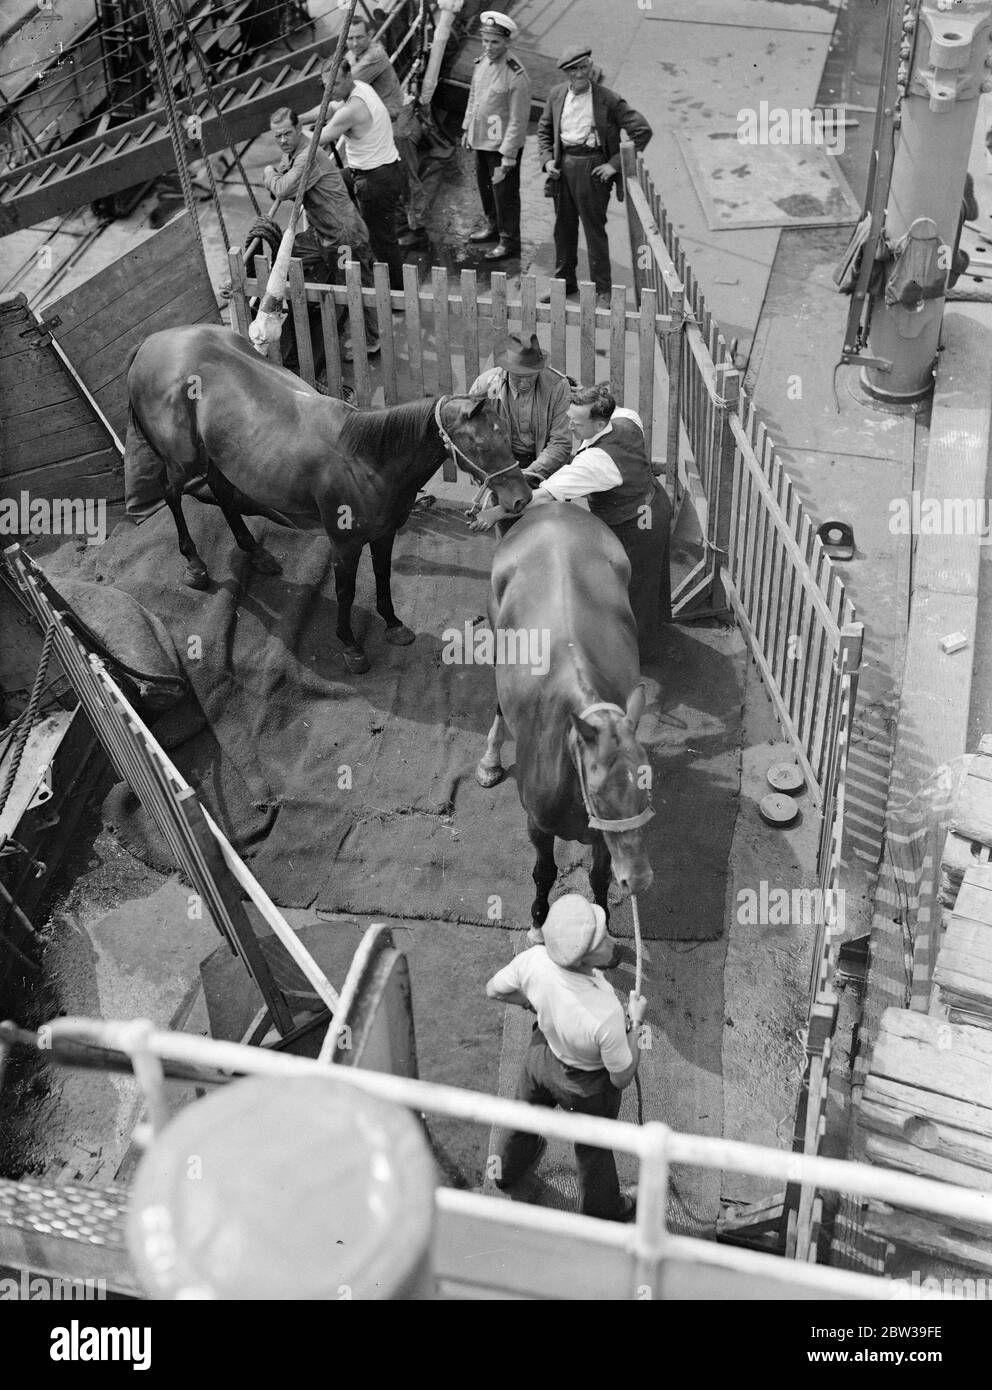 35 Polo Ponys, die in den internationalen Polo-Spielen in Meadow Brook, Long Island, USA verwendet werden sollen, wurden auf dem American Trader in Royal Albert Docks, London für New York eingesetzt. Foto zeigt Polo Ponys, die an Bord des American Trader in den Royal Albert Docks gehen. 26 Juli 1935 Stockfoto